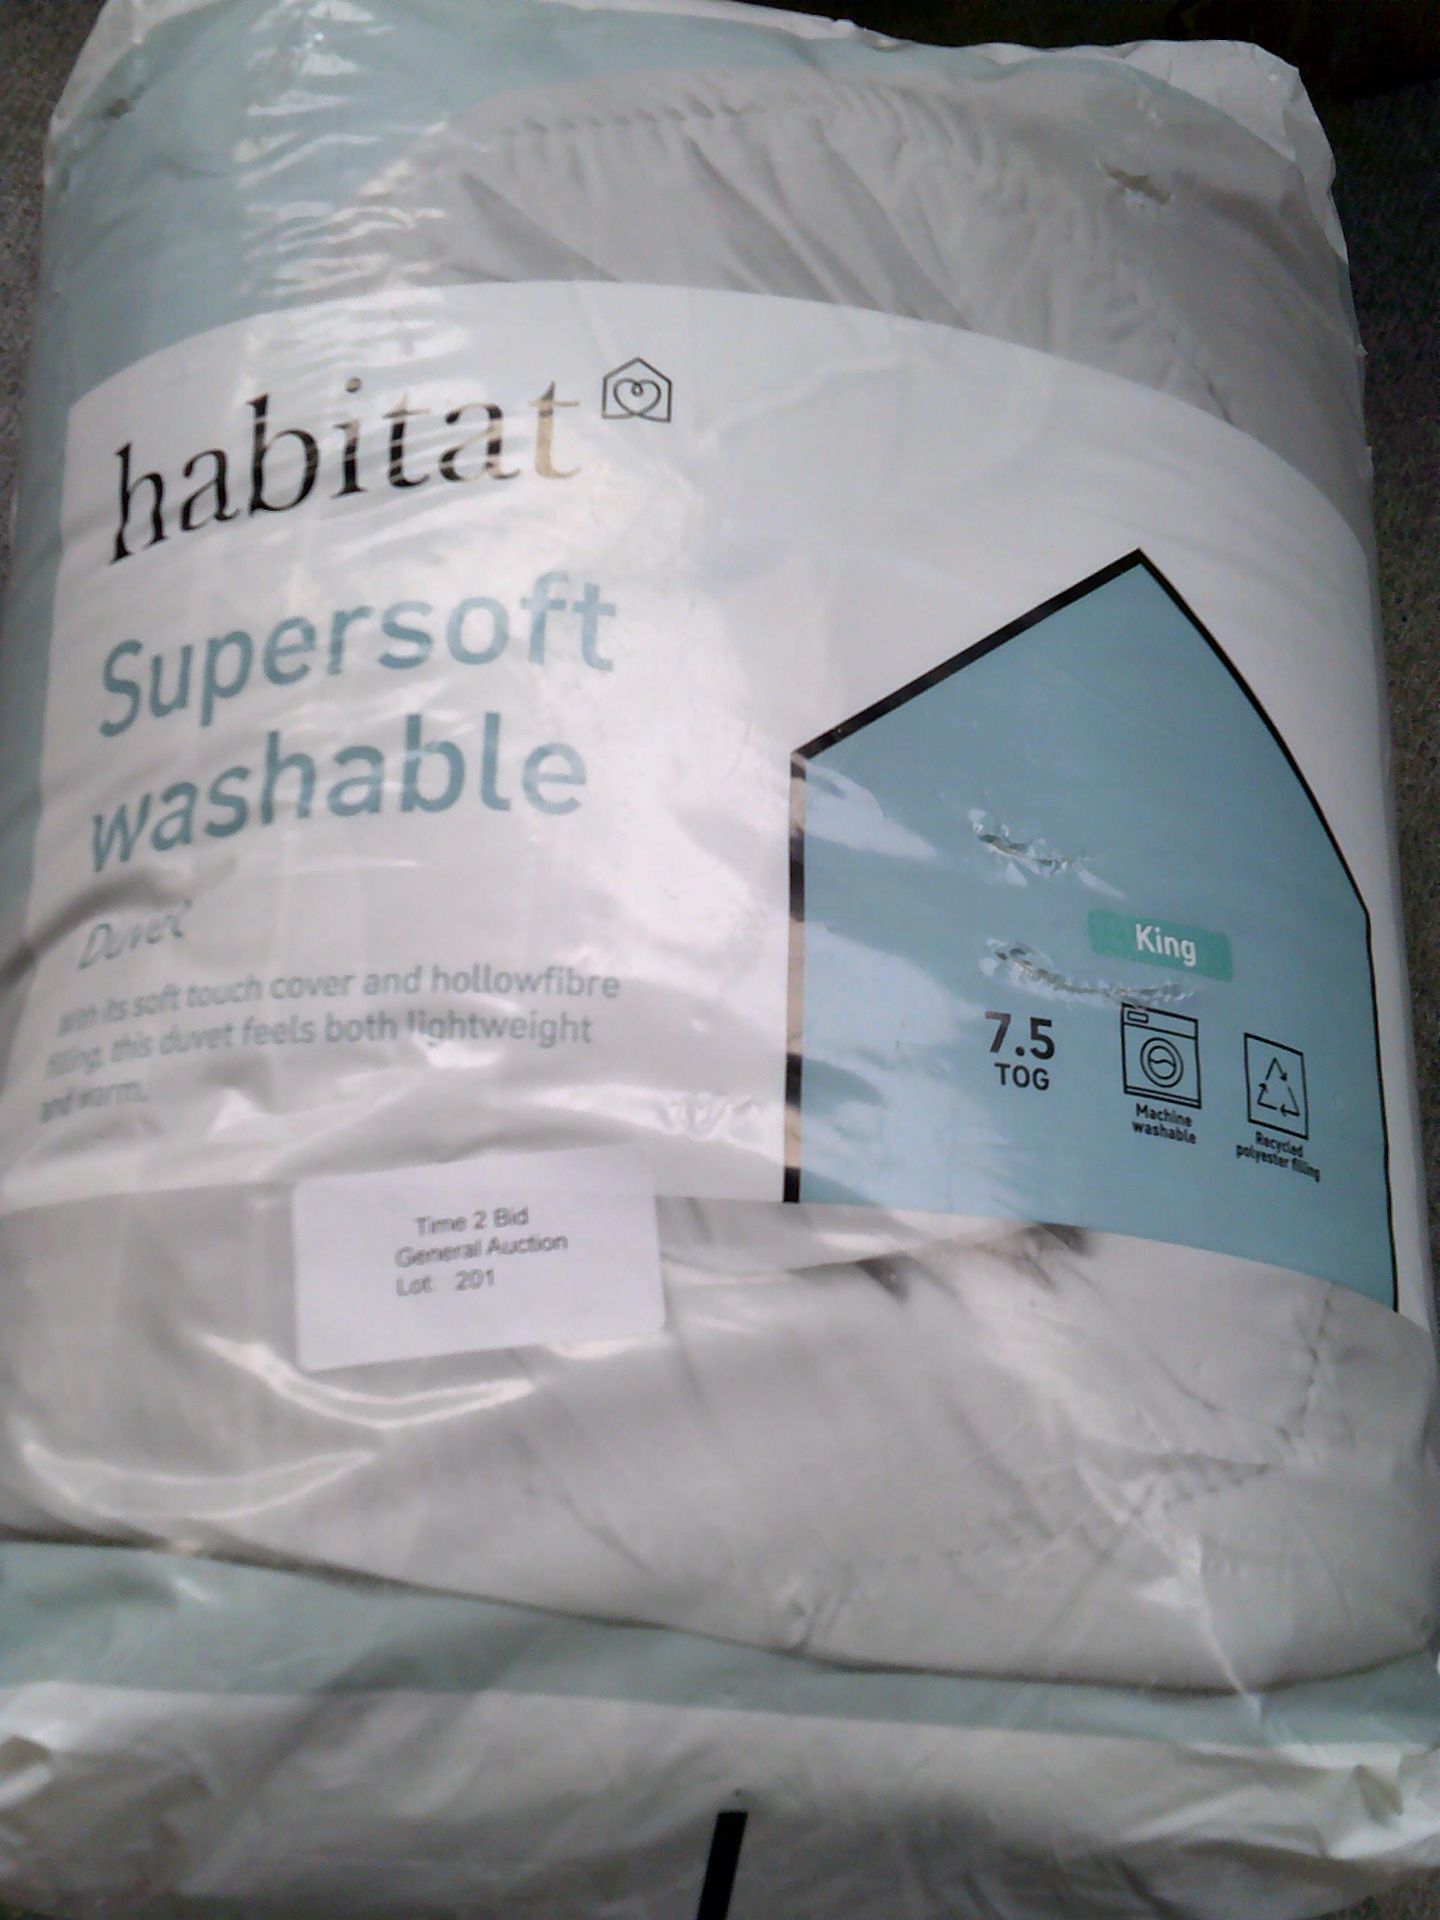 Habitat supersoft washable duvet king tog 7.5 (Delivery Band A)